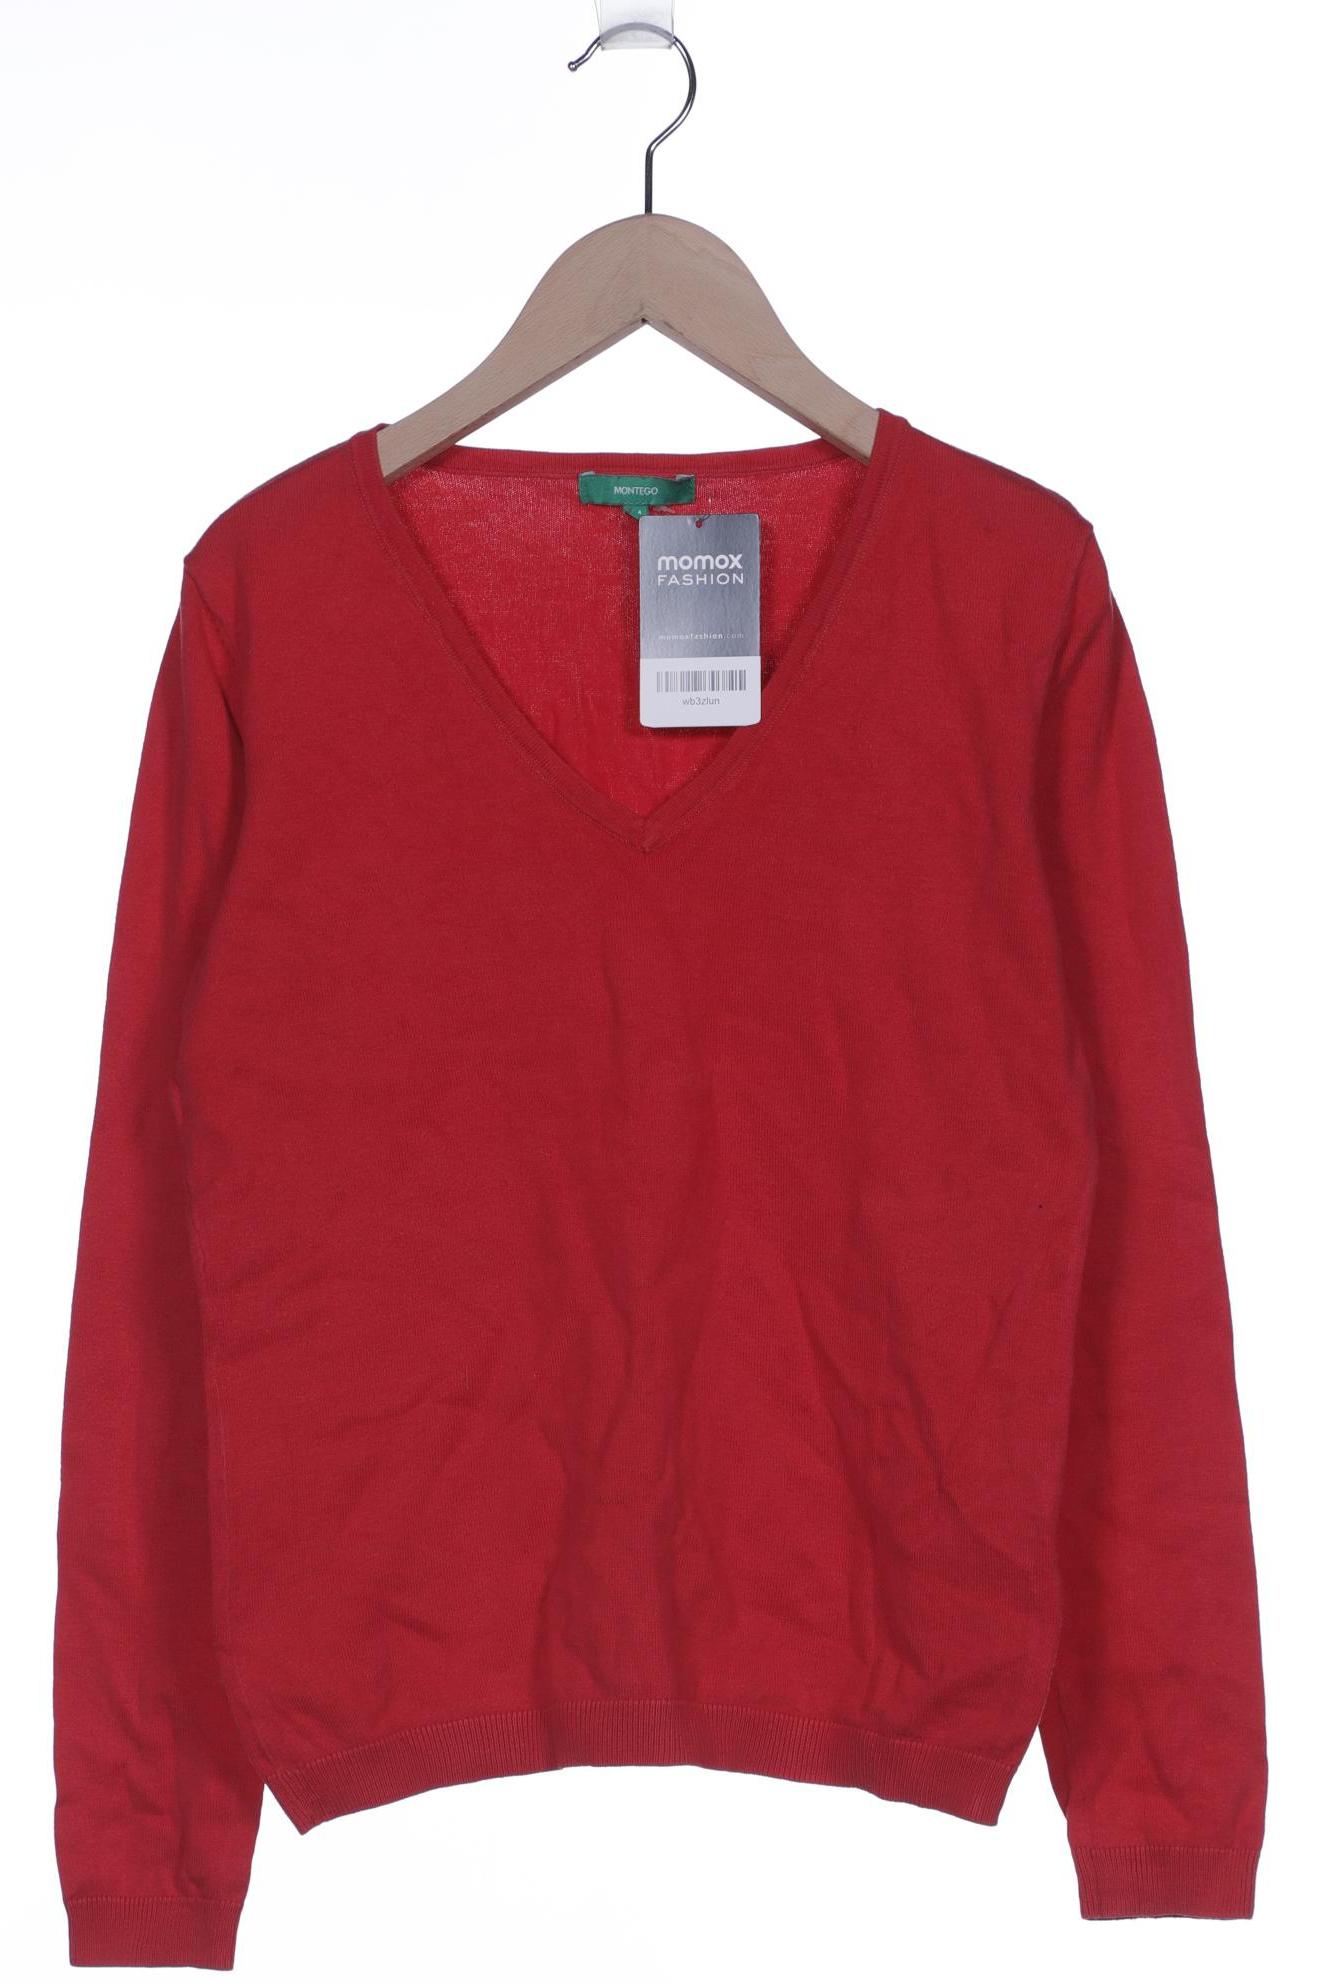 Montego Damen Pullover, rot von montego